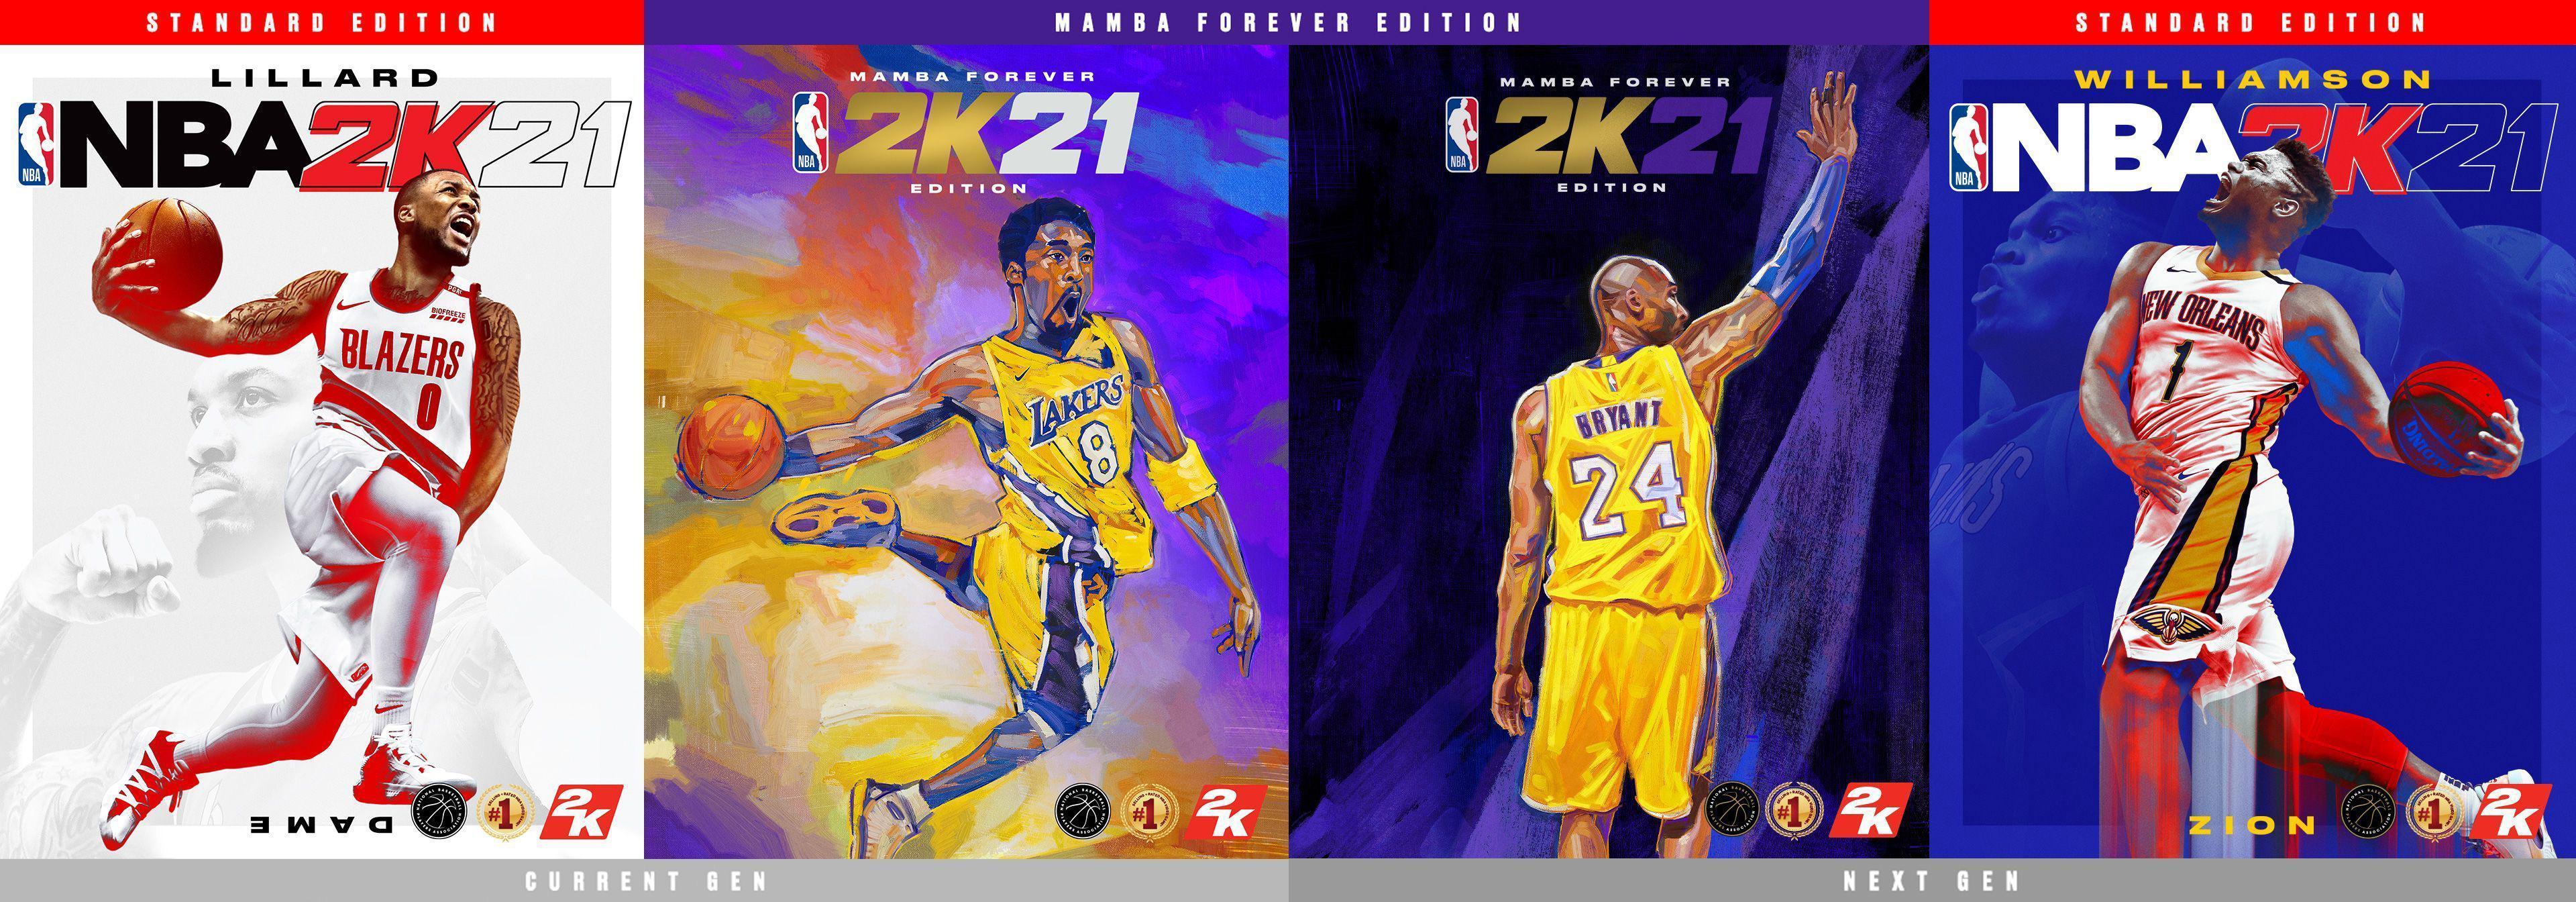 NBA 2K21in son kapak yıldızı Kobe Bryant oldu